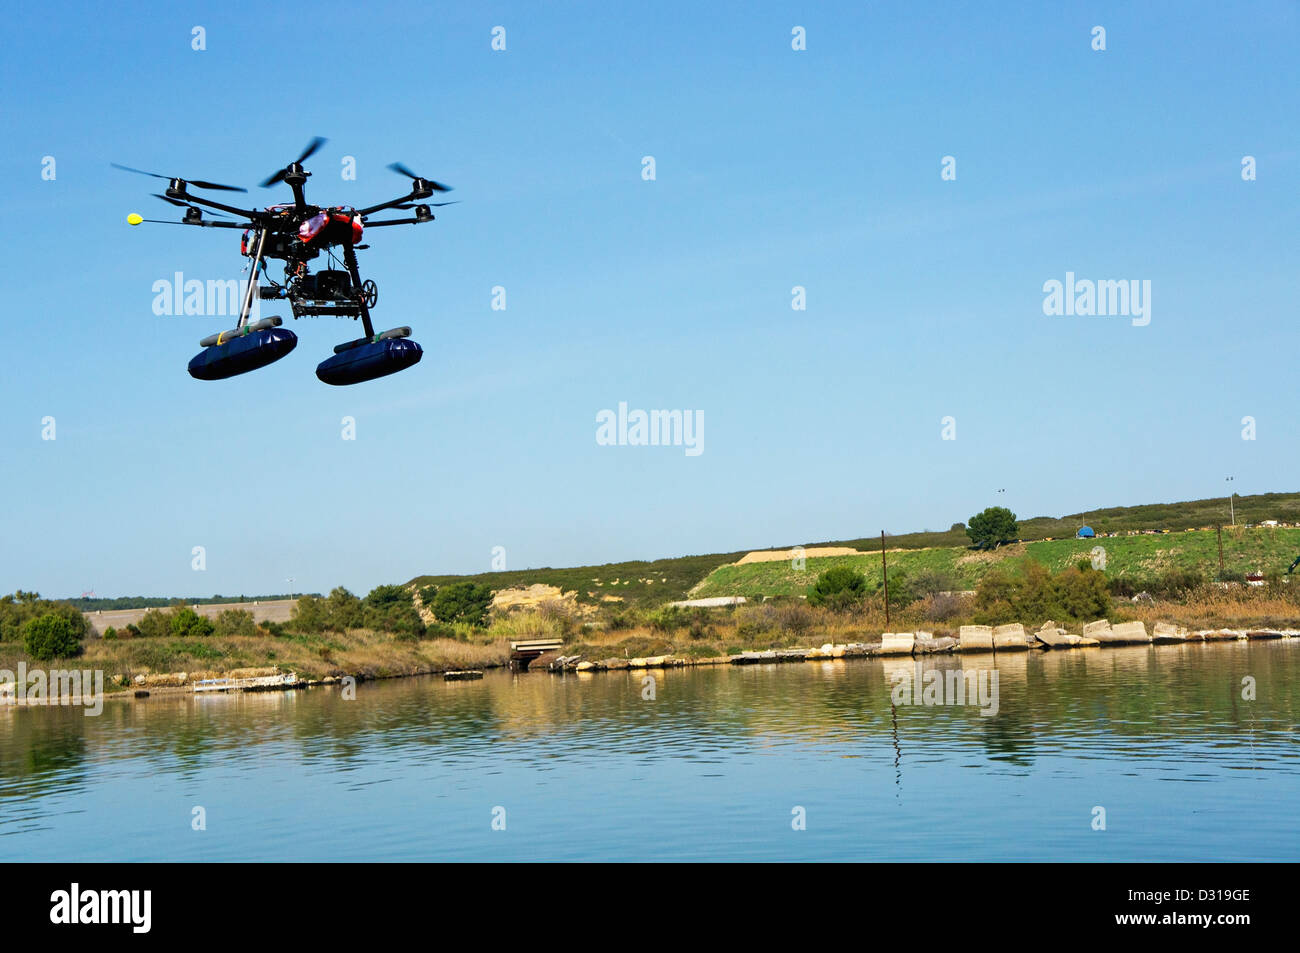 Drohne oder Unmanned Aerial Vehicle (UAV) verwendet für Fotografie / Filmen fliegen von Canal de Caronte, Martigues, Frankreich Stockfoto